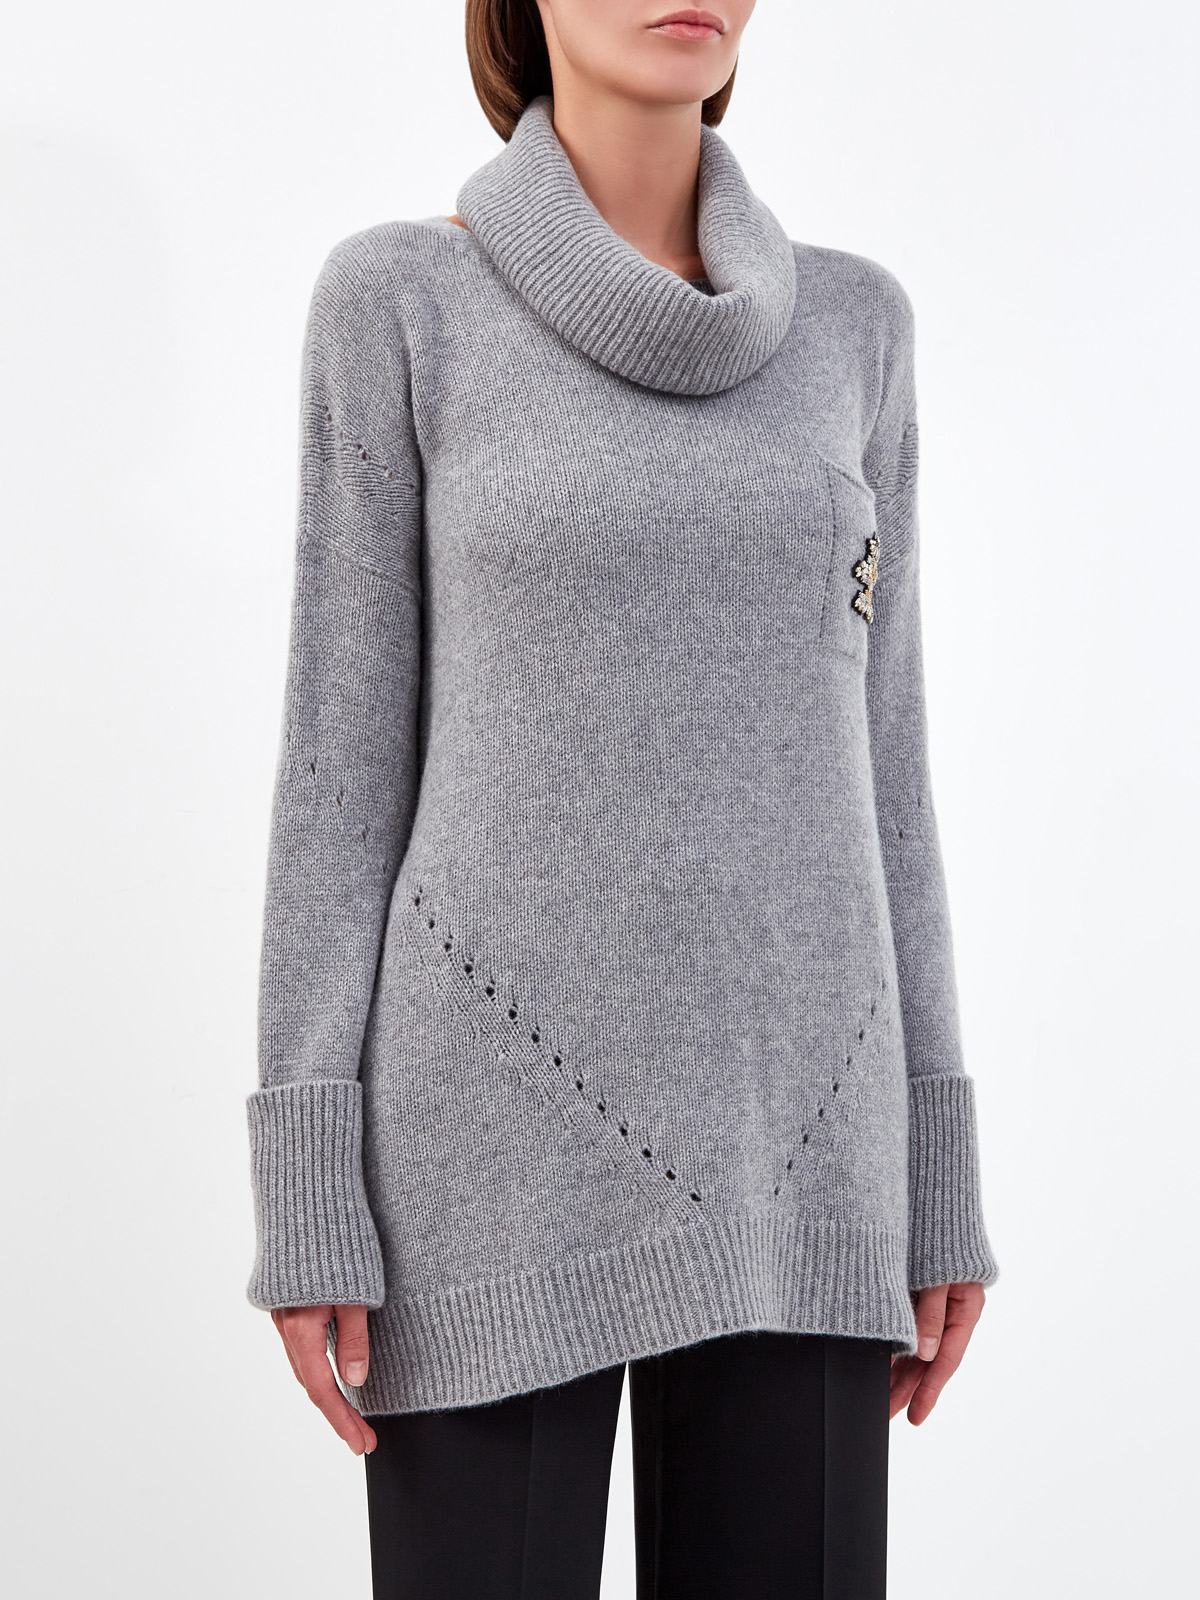 Удлиненный свитер из пряжи на основе шерсти и кашемира ERMANNO SCERVINO, цвет серый, размер 38;40;42 - фото 3